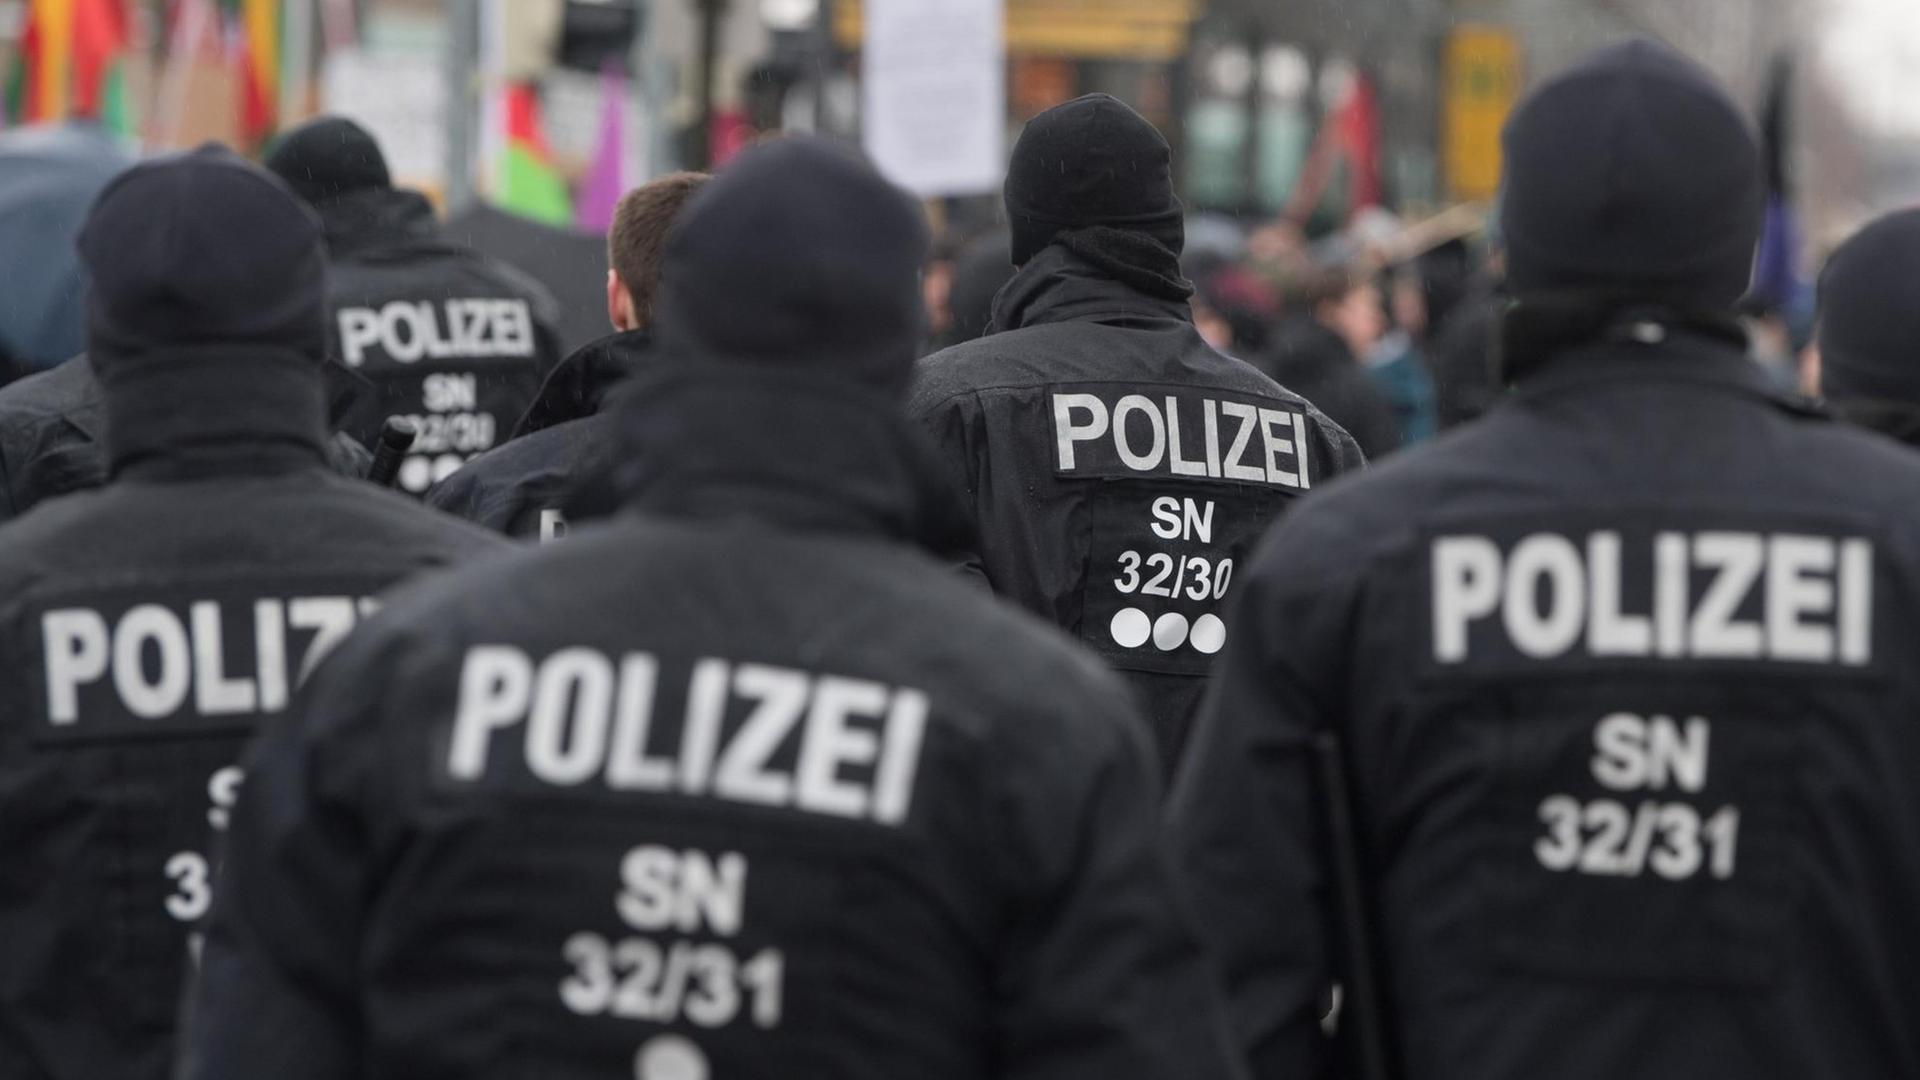 Polizisten beobachten am Rande einer Demonstration am 26.01.2019 des sachsenweiten Bündnisses "Polizeigesetz stoppen!" auf dem Wiener Platz in Dresden das Demonstrationsgeschehen.